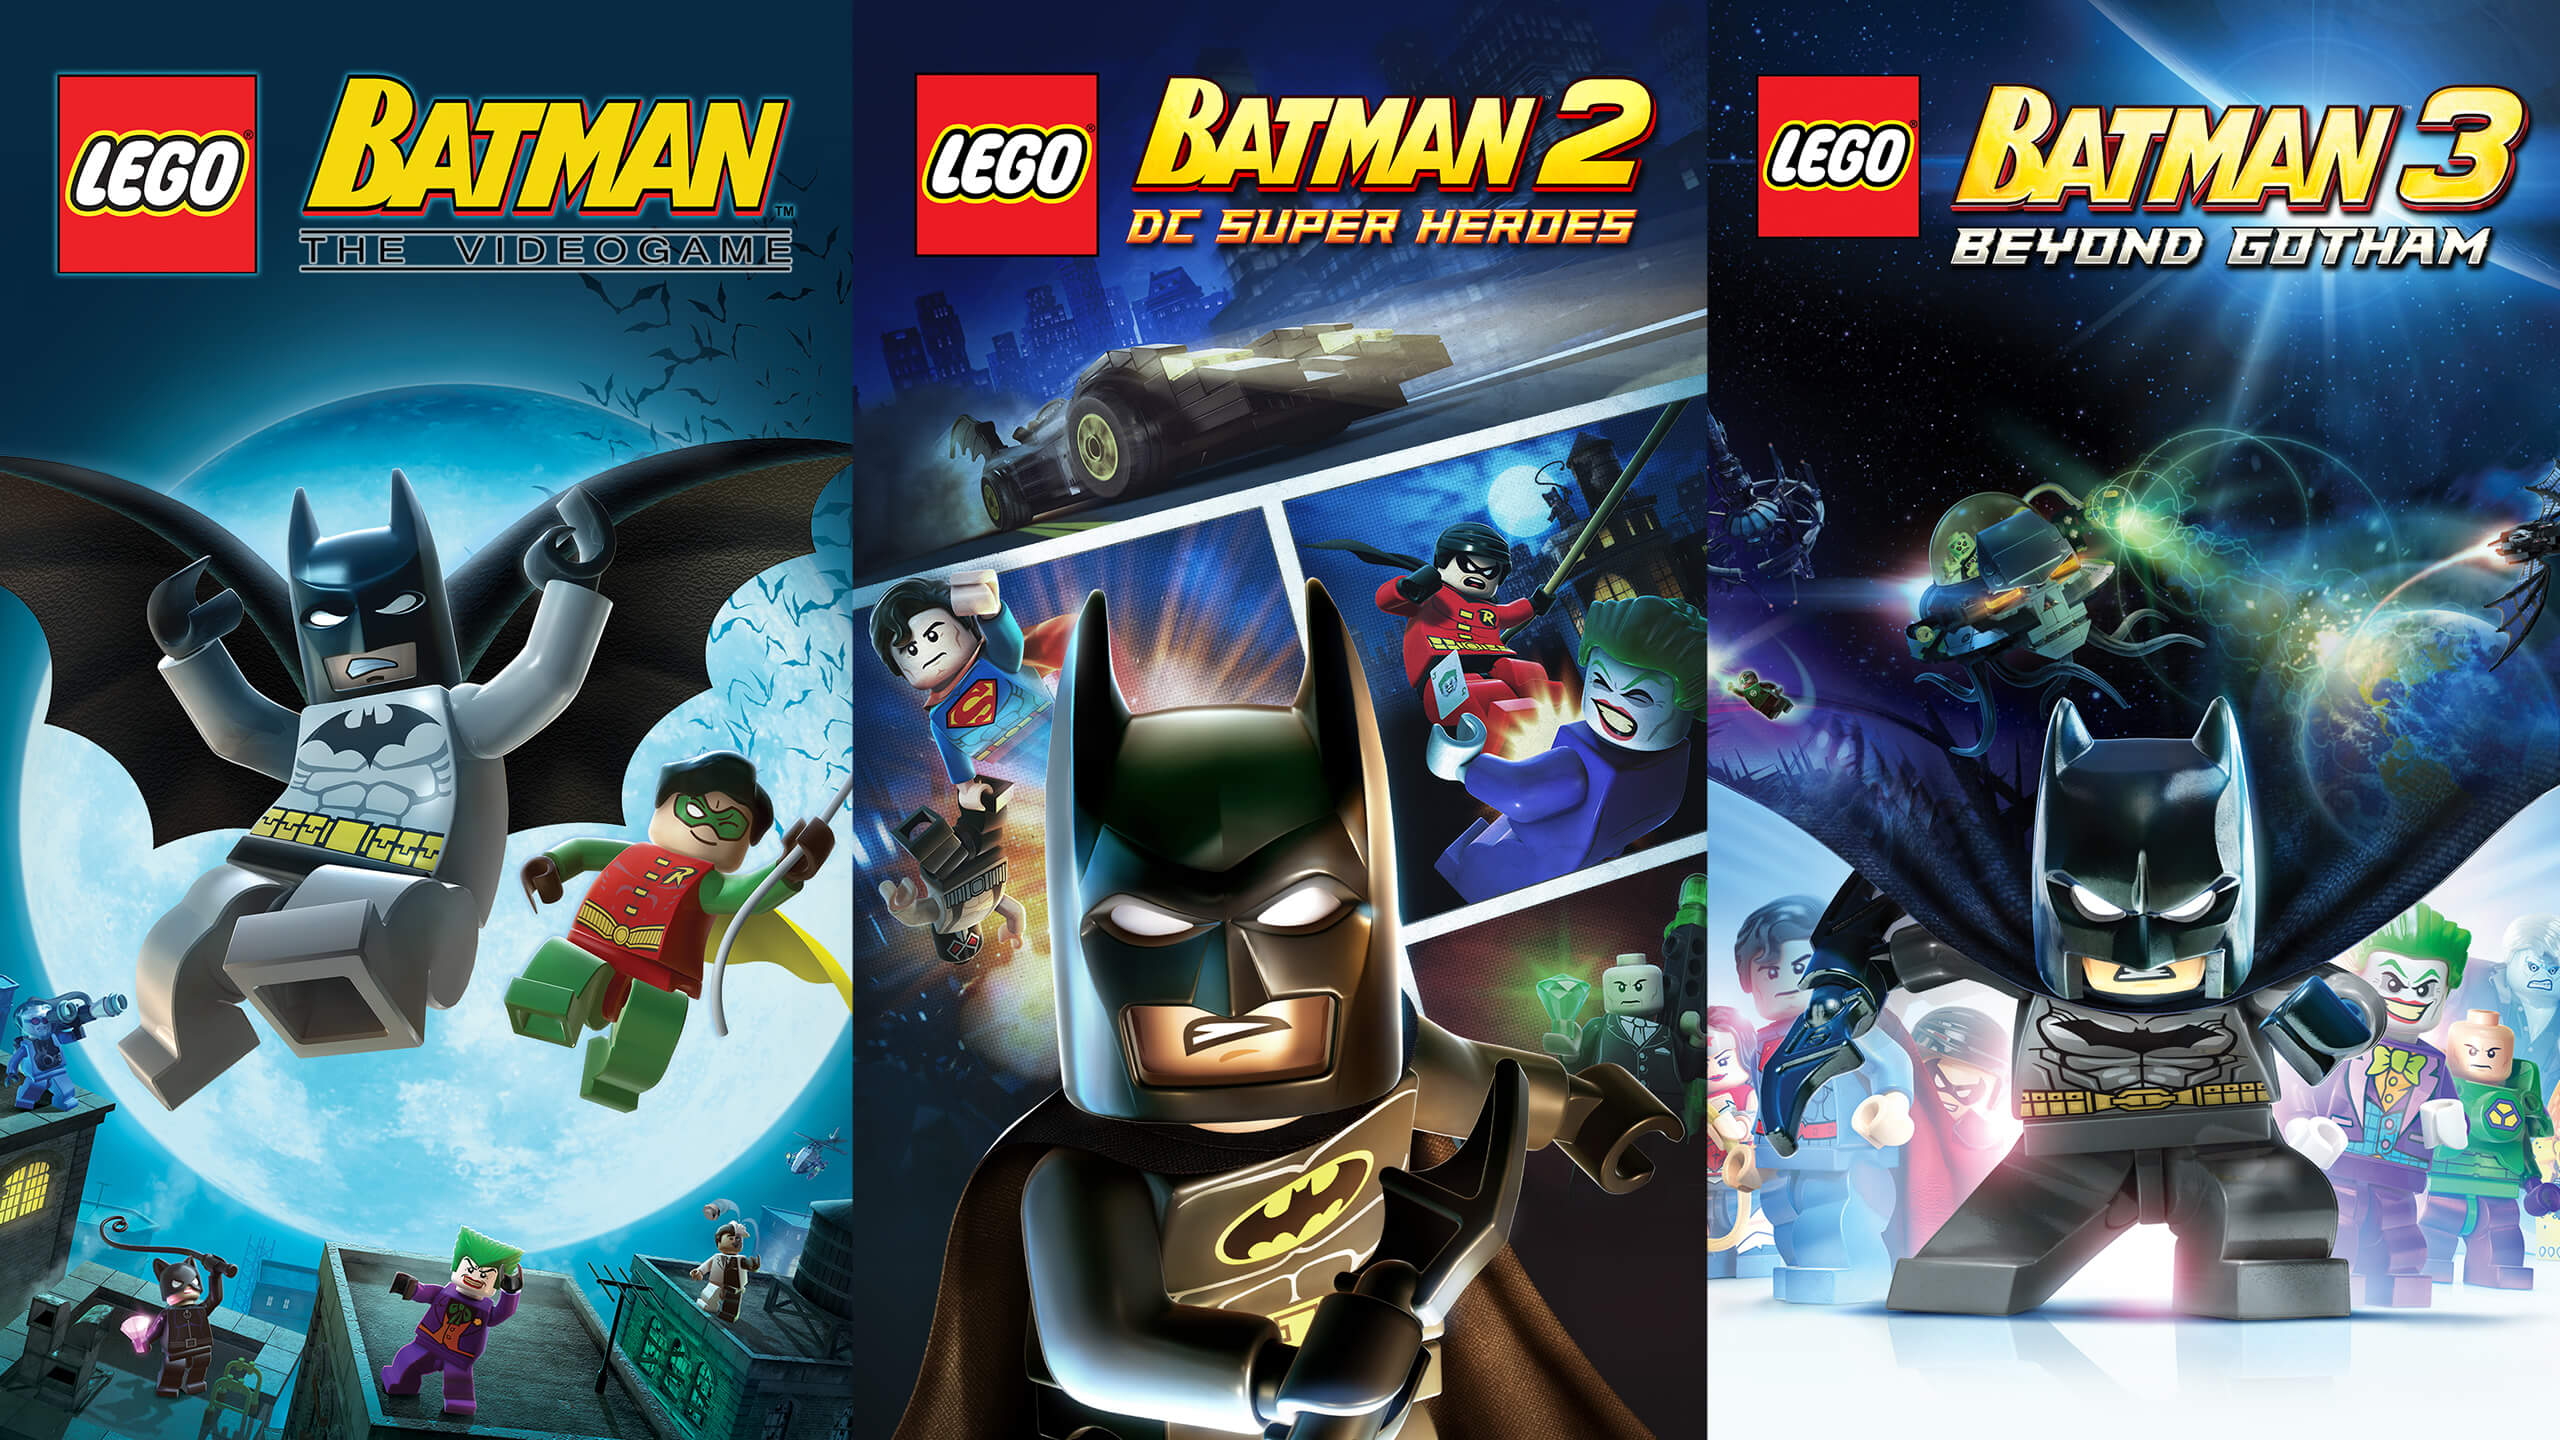 Diesel_bundles_lego-batman-trilogy_Lego_Batman-2560x1440-18c7a39ddfd5531715018f9d2b7ebe9925b16a2e